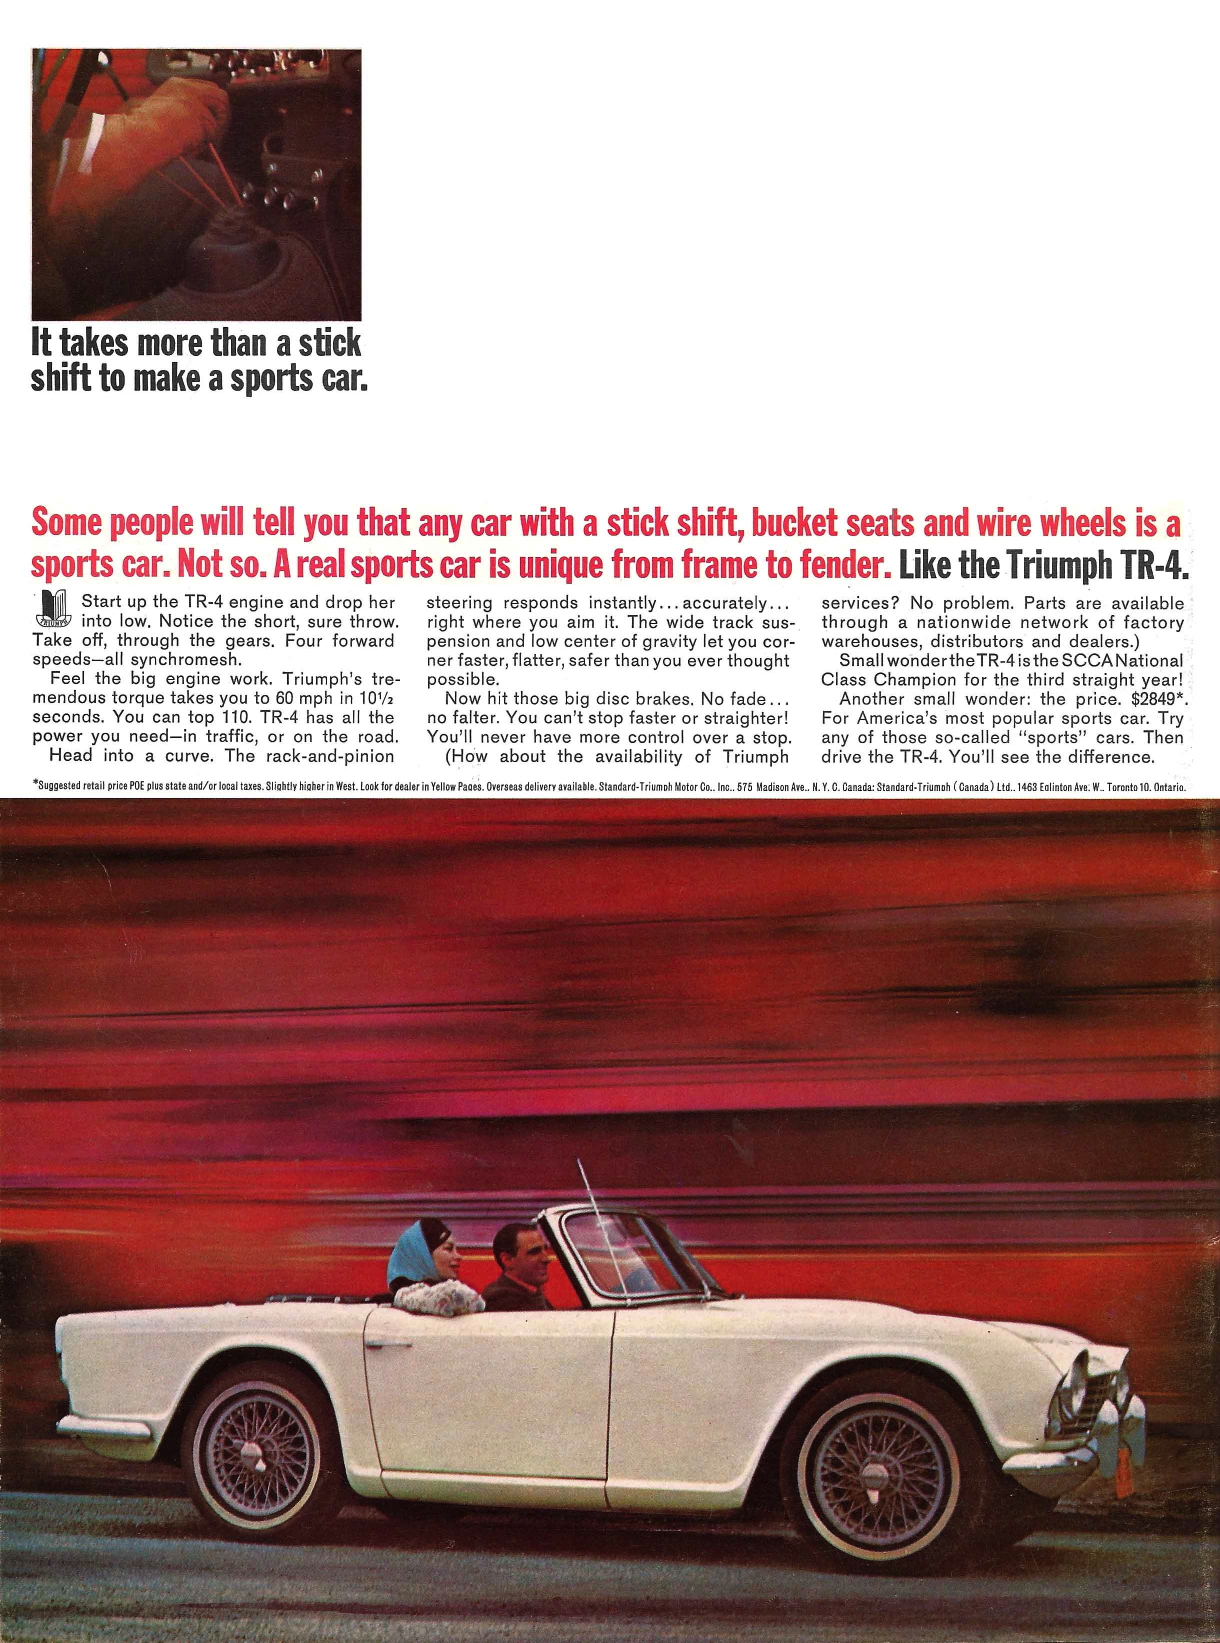 1965 Triumph Ad "It takes more than a stick to make a sports car"